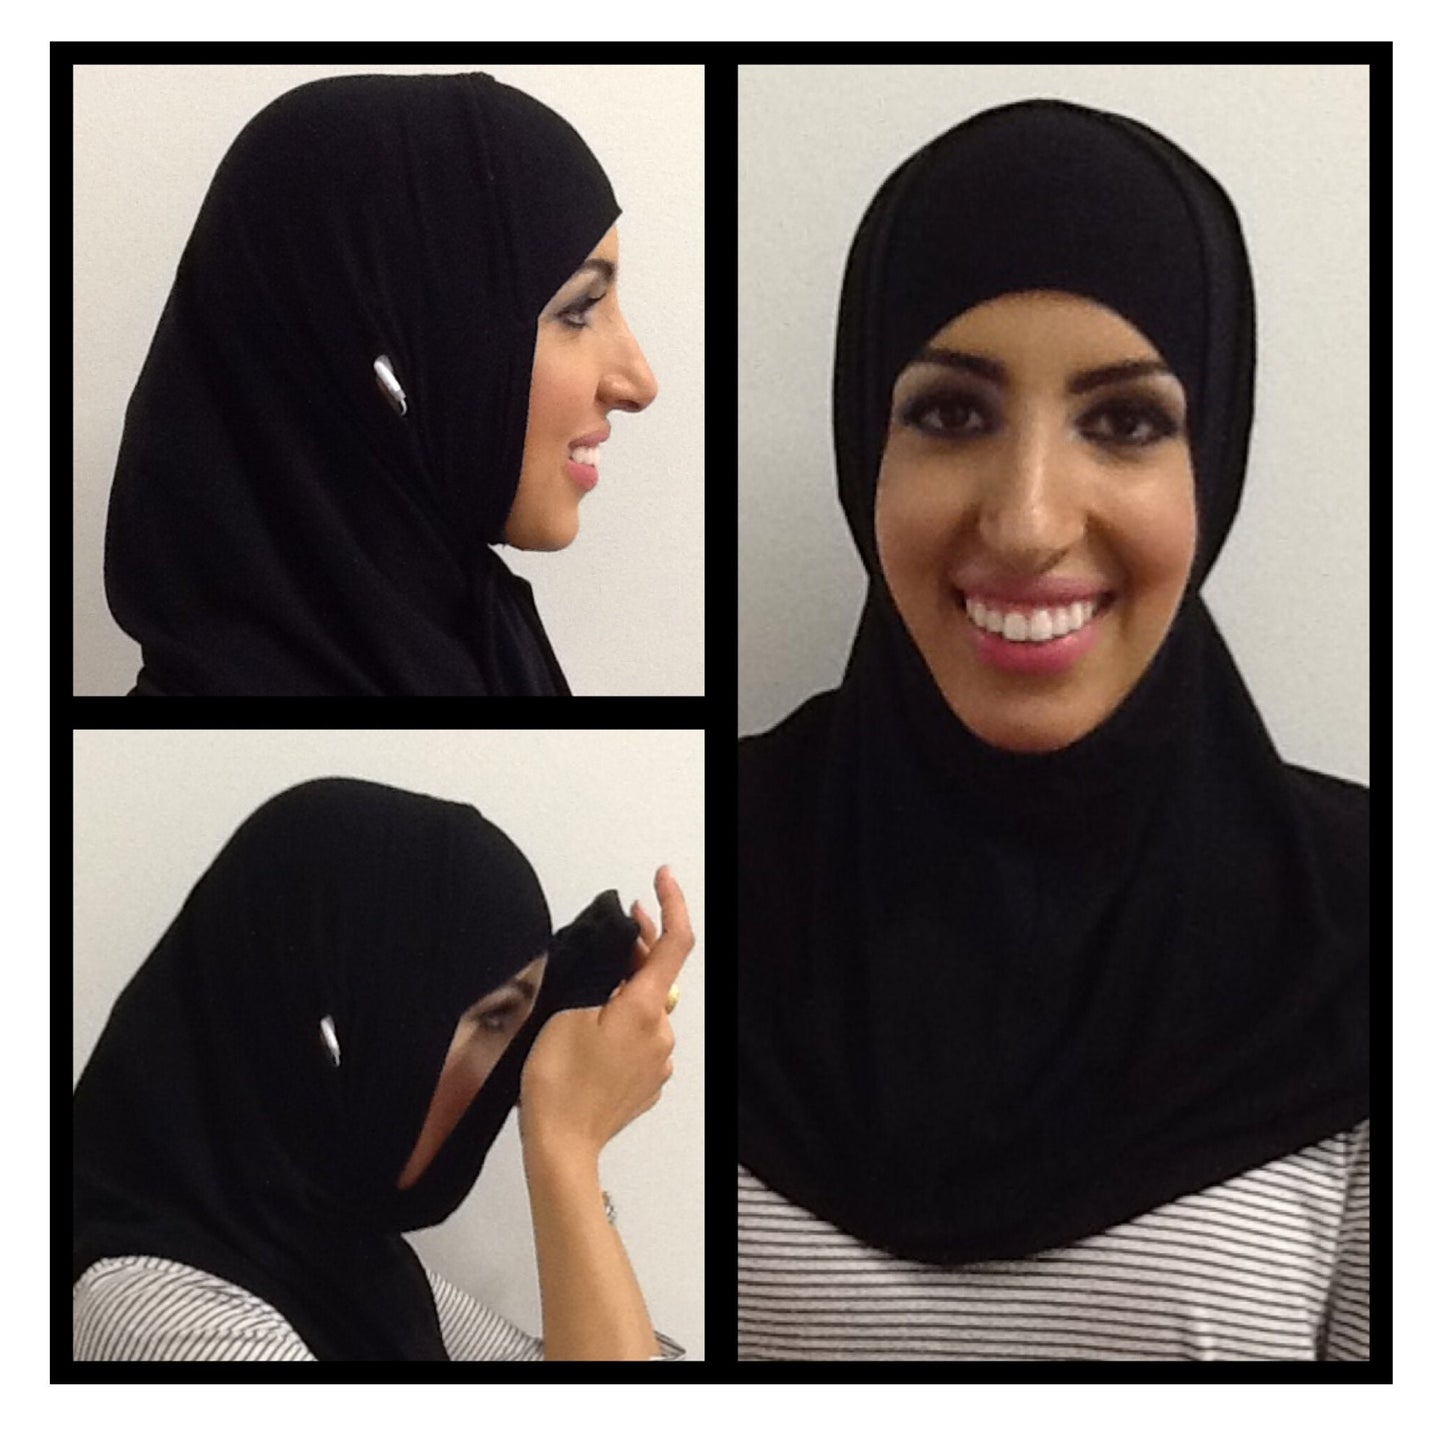 Innovative Hijab Designed for the Digital Era Medical Hijab Sports Hijab Athletic Hijab Al Amira Hijab Instant Hijab Running Hijab